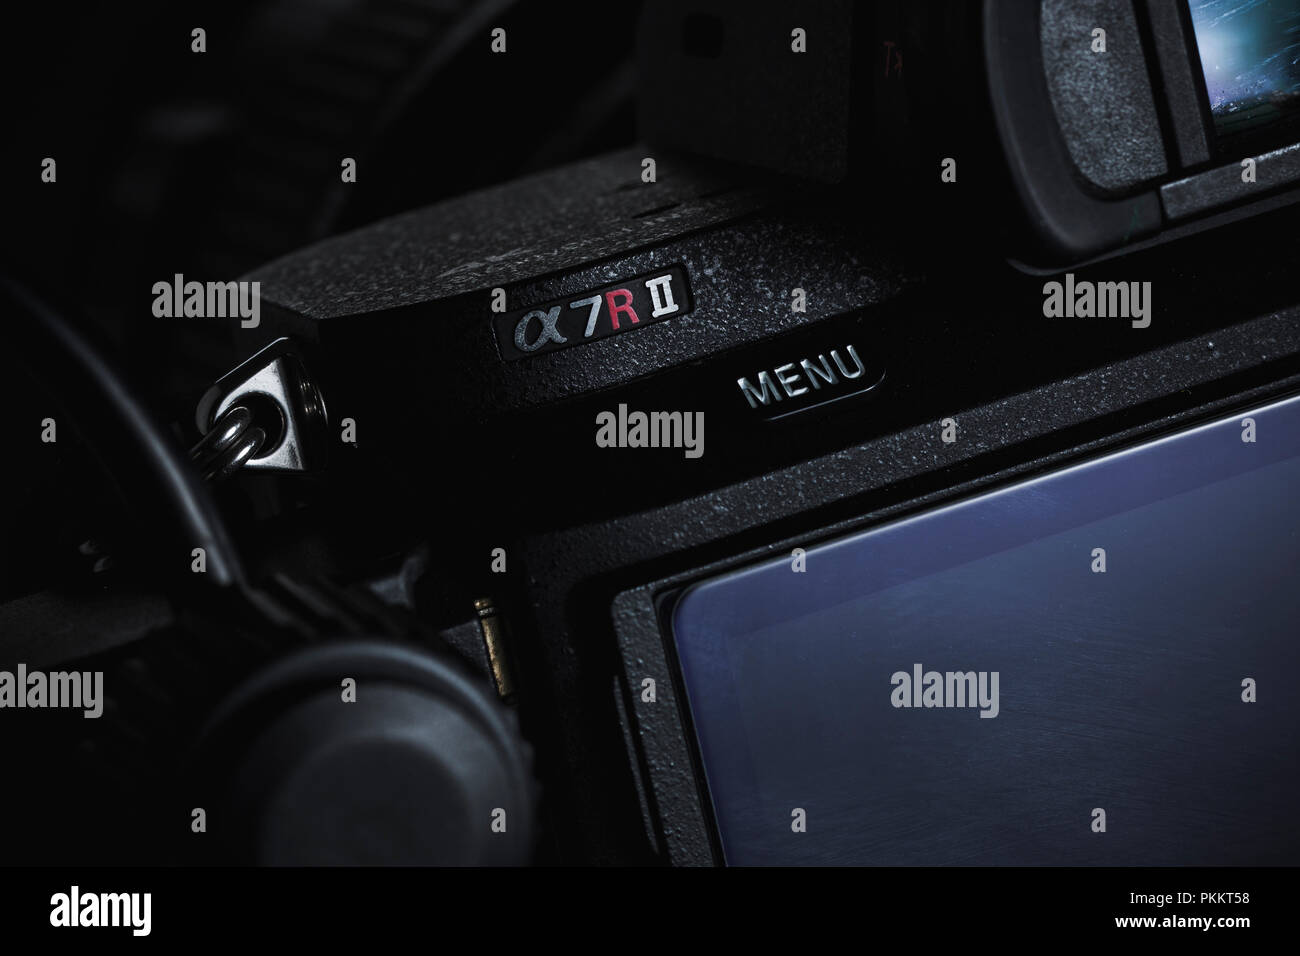 Sony a7rii spiegellosen Kamera vor einem dunklen Hintergrund. Stockfoto